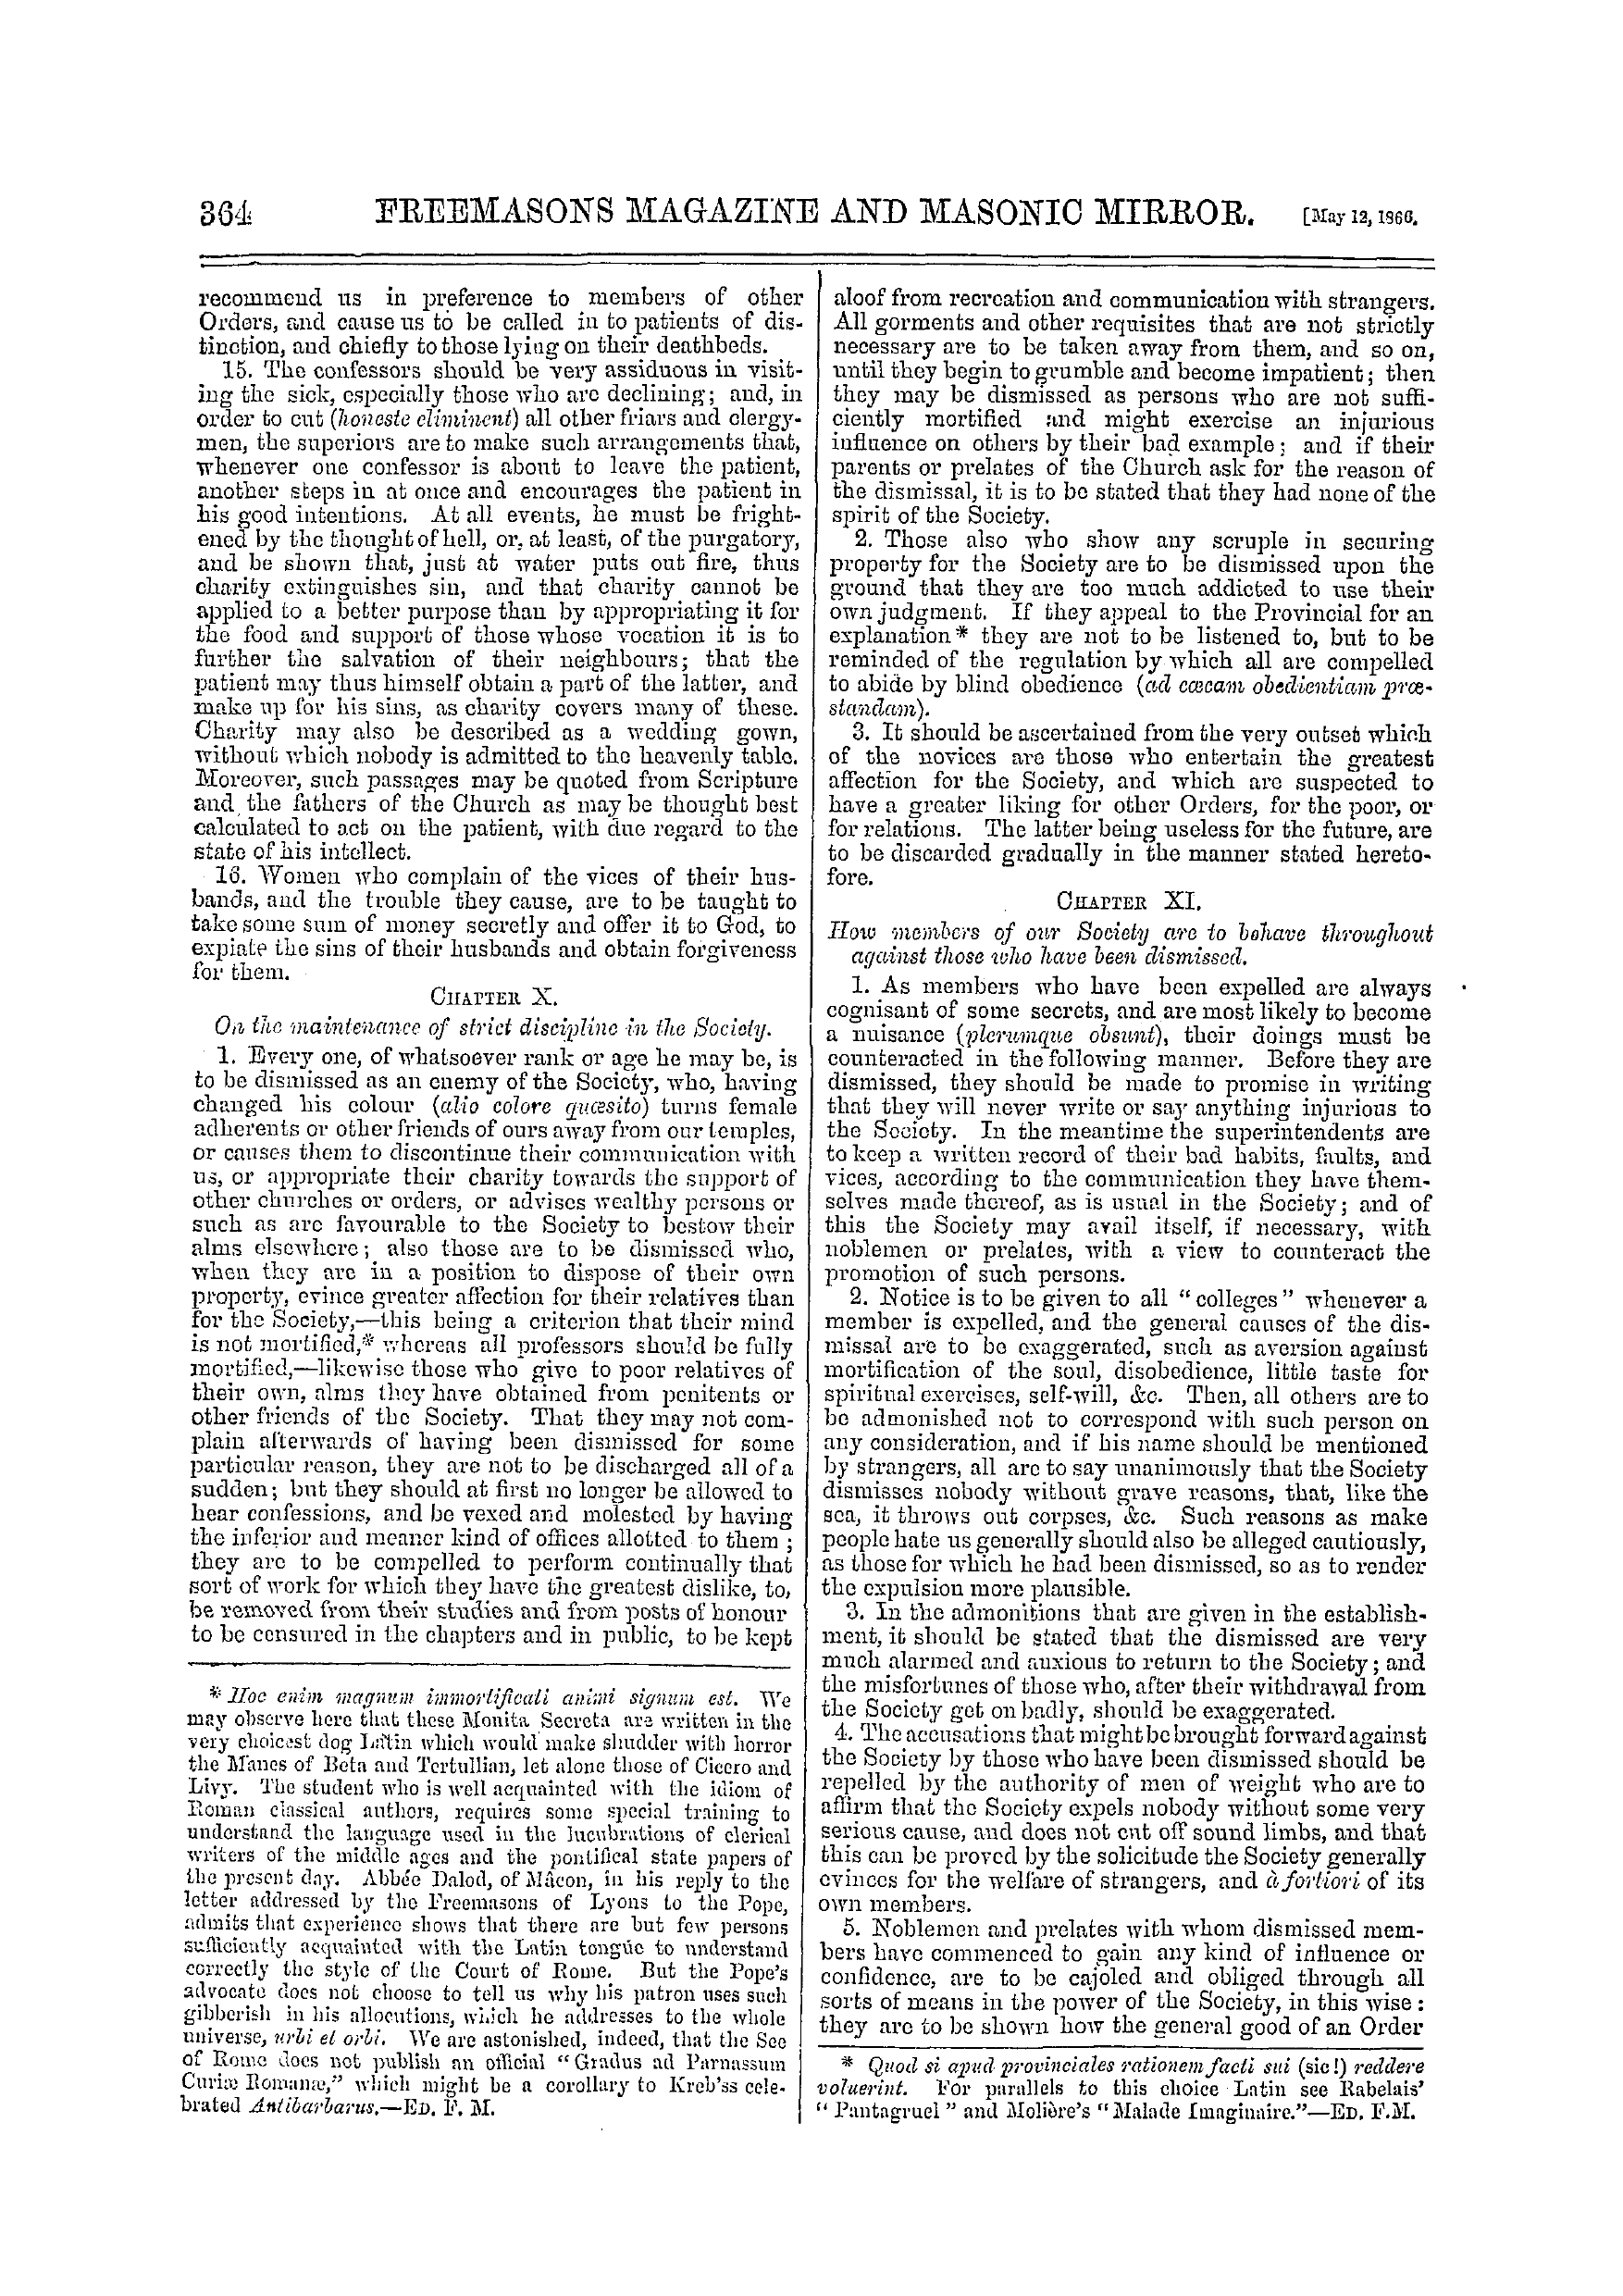 The Freemasons' Monthly Magazine: 1866-05-12: 4